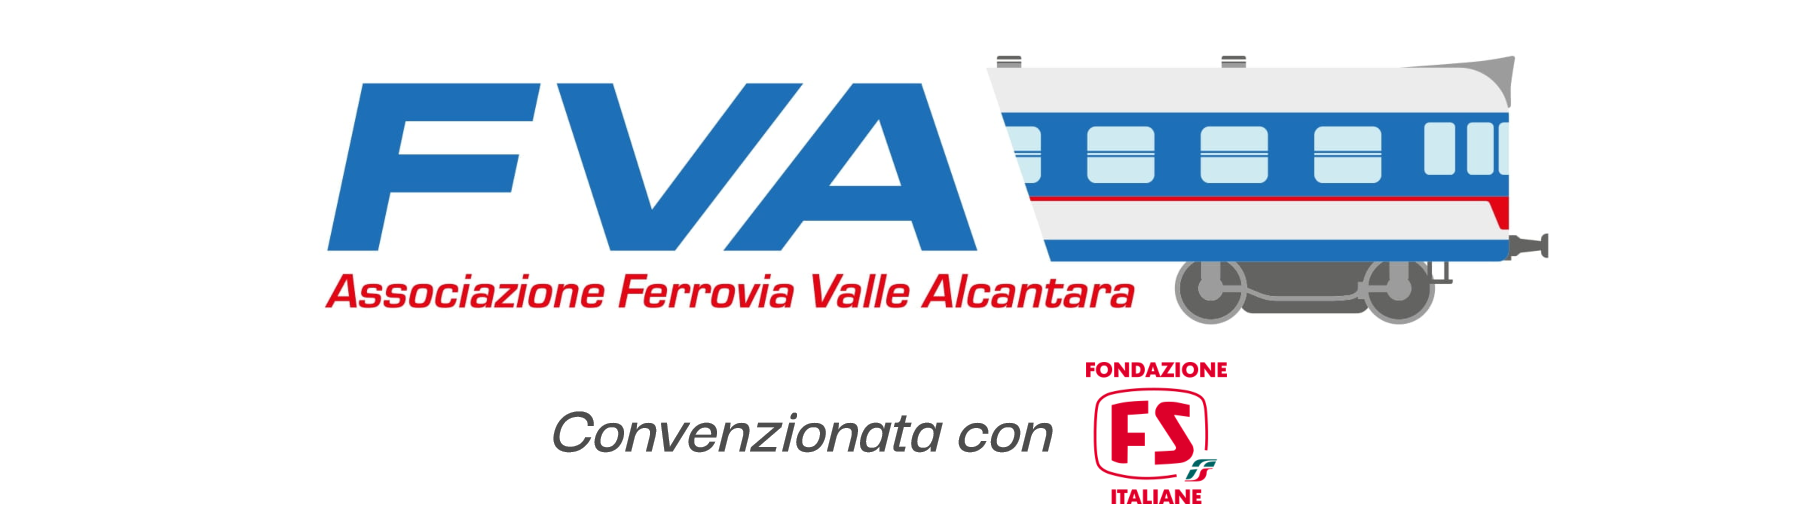 Statuto-Associazione Ferrovia Valle Alcantara